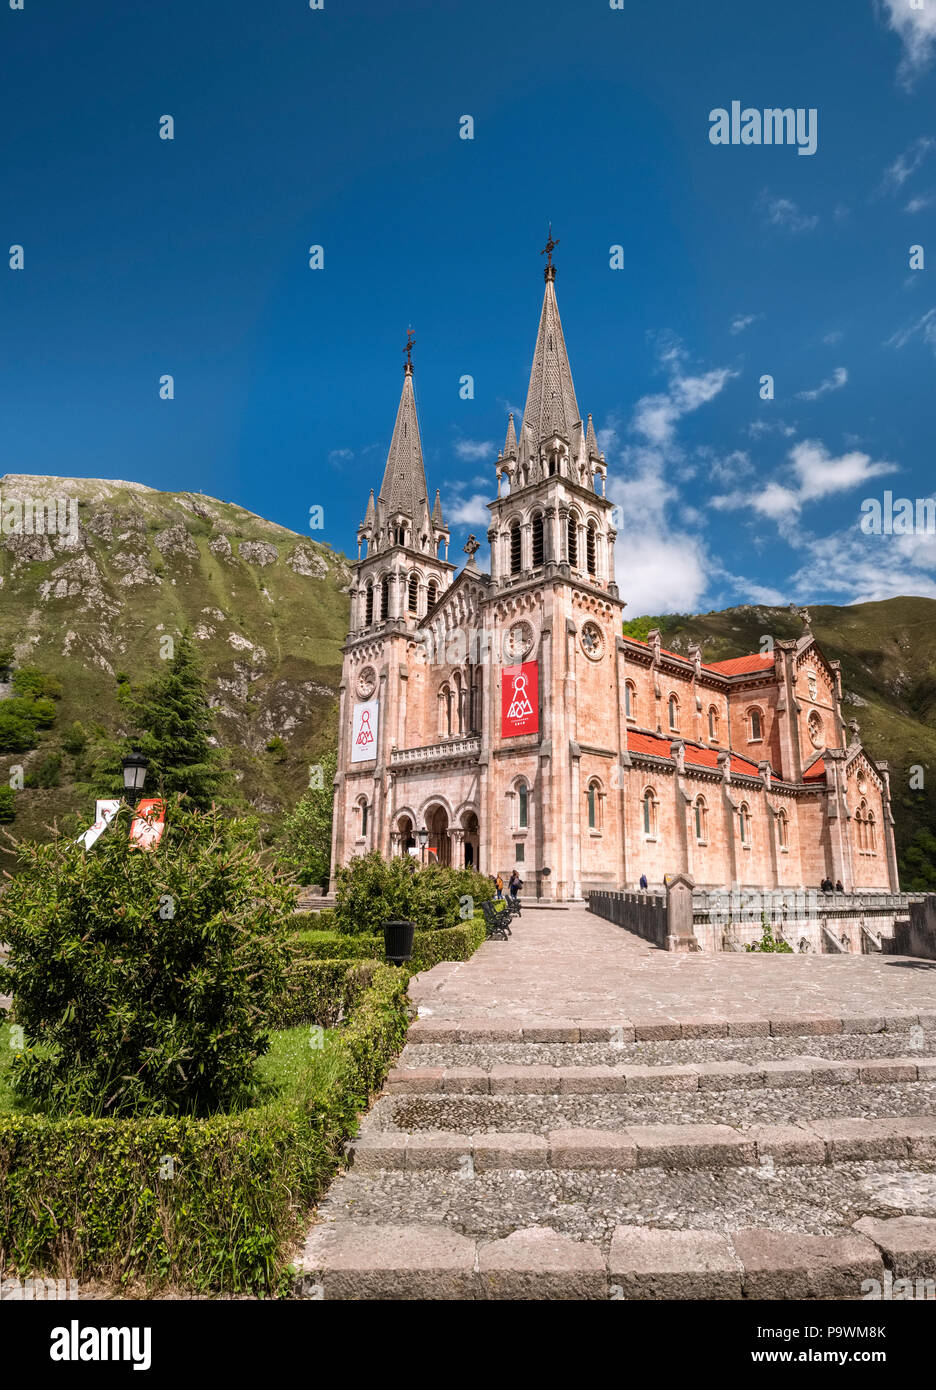 Basilica of Covadonga, Santa Maria la Real Basilica, Picos de Europa National Park, Covadonga, Cangas de Onís, Asturias, Spain Stock Photo